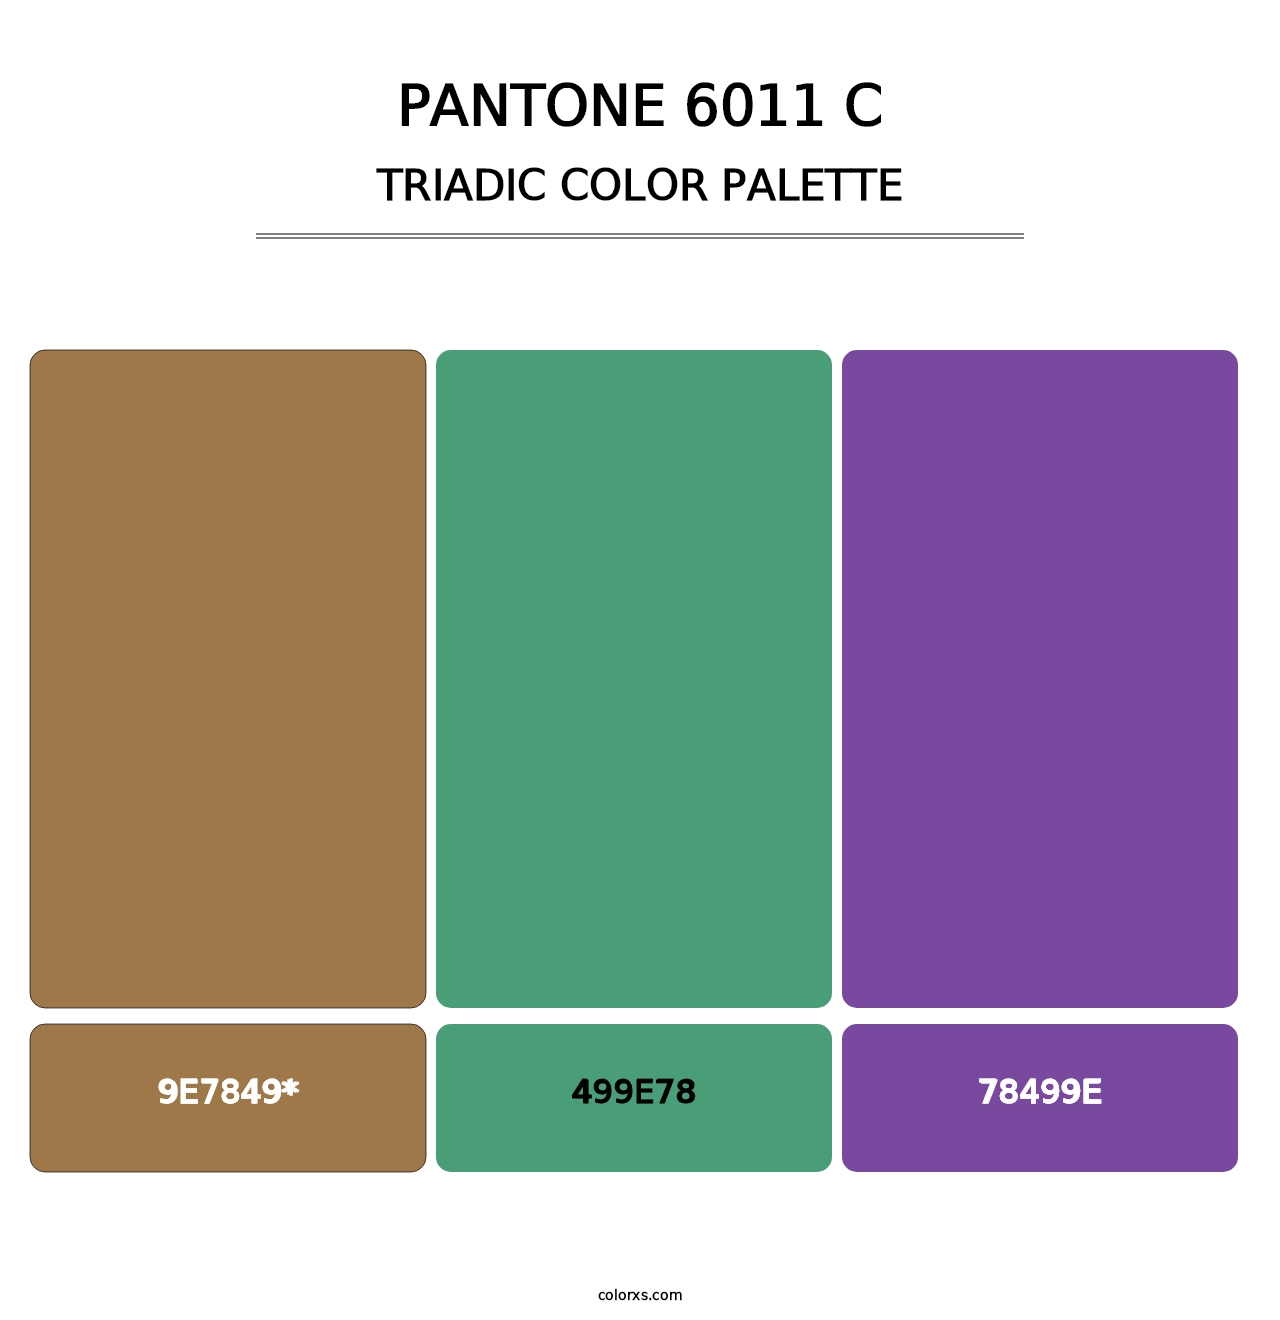 PANTONE 6011 C - Triadic Color Palette